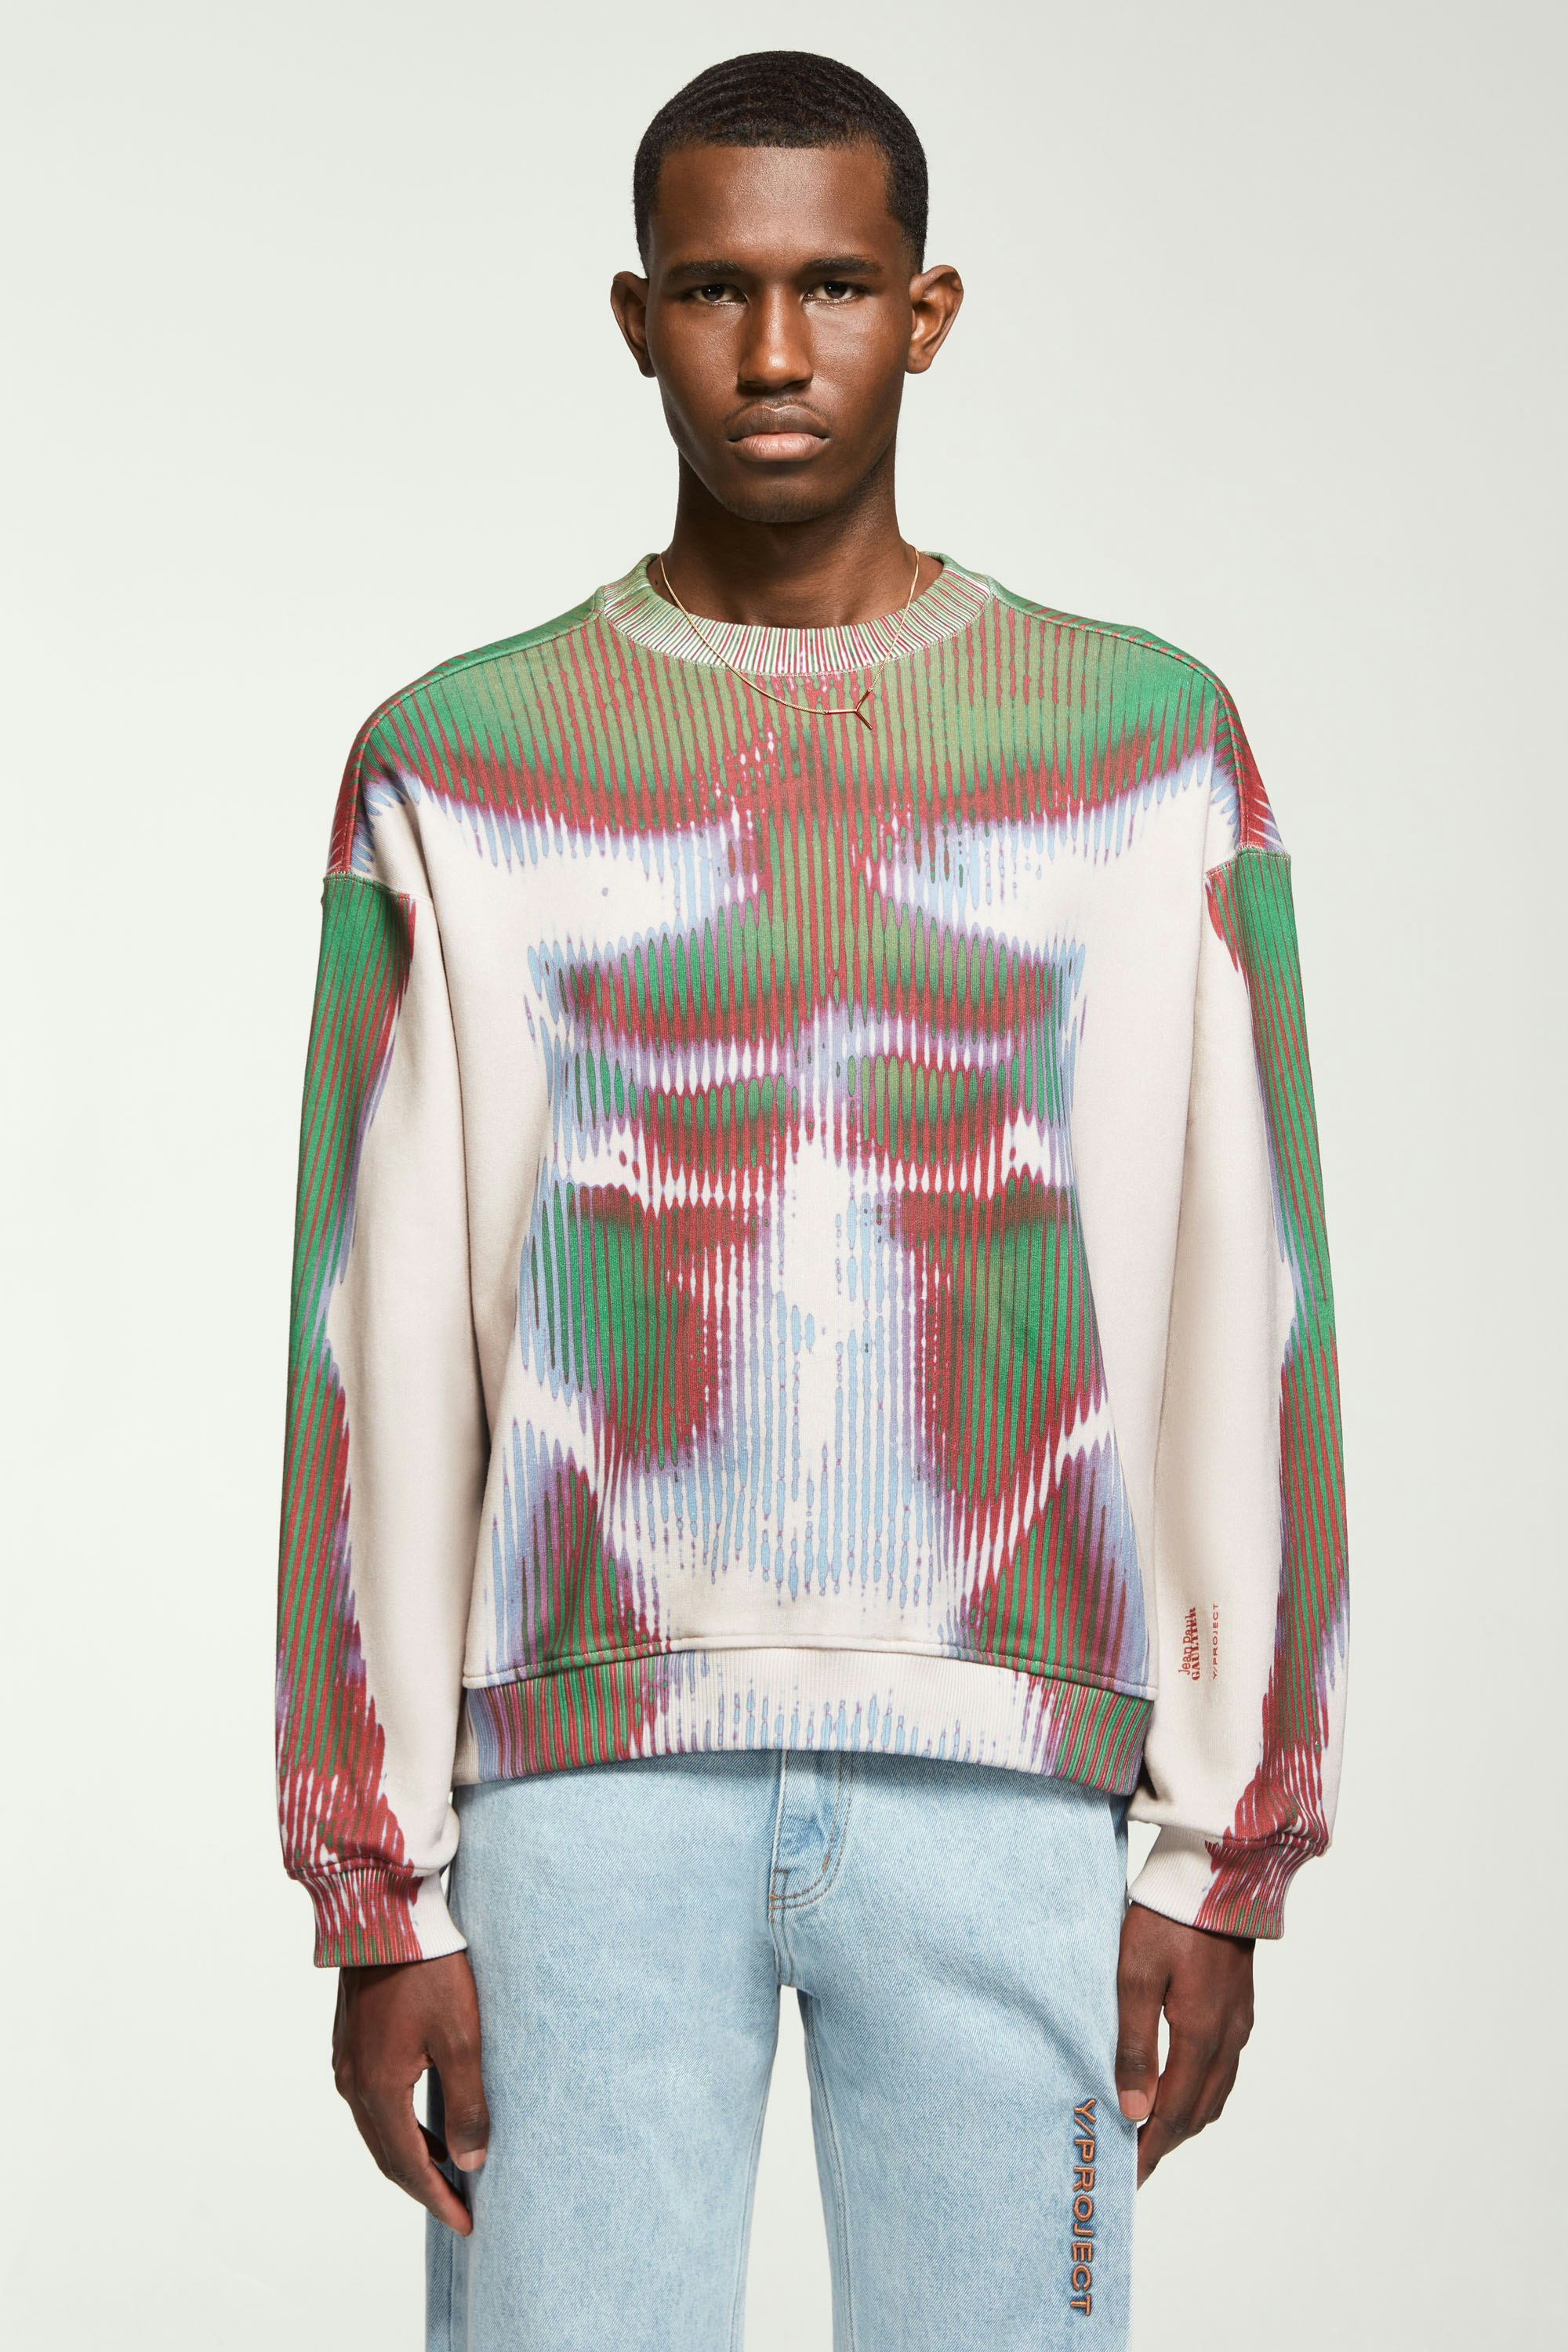 The Green & Beige Body Morph Sweatshirt by Jean Paul Gaultier x Y/Project